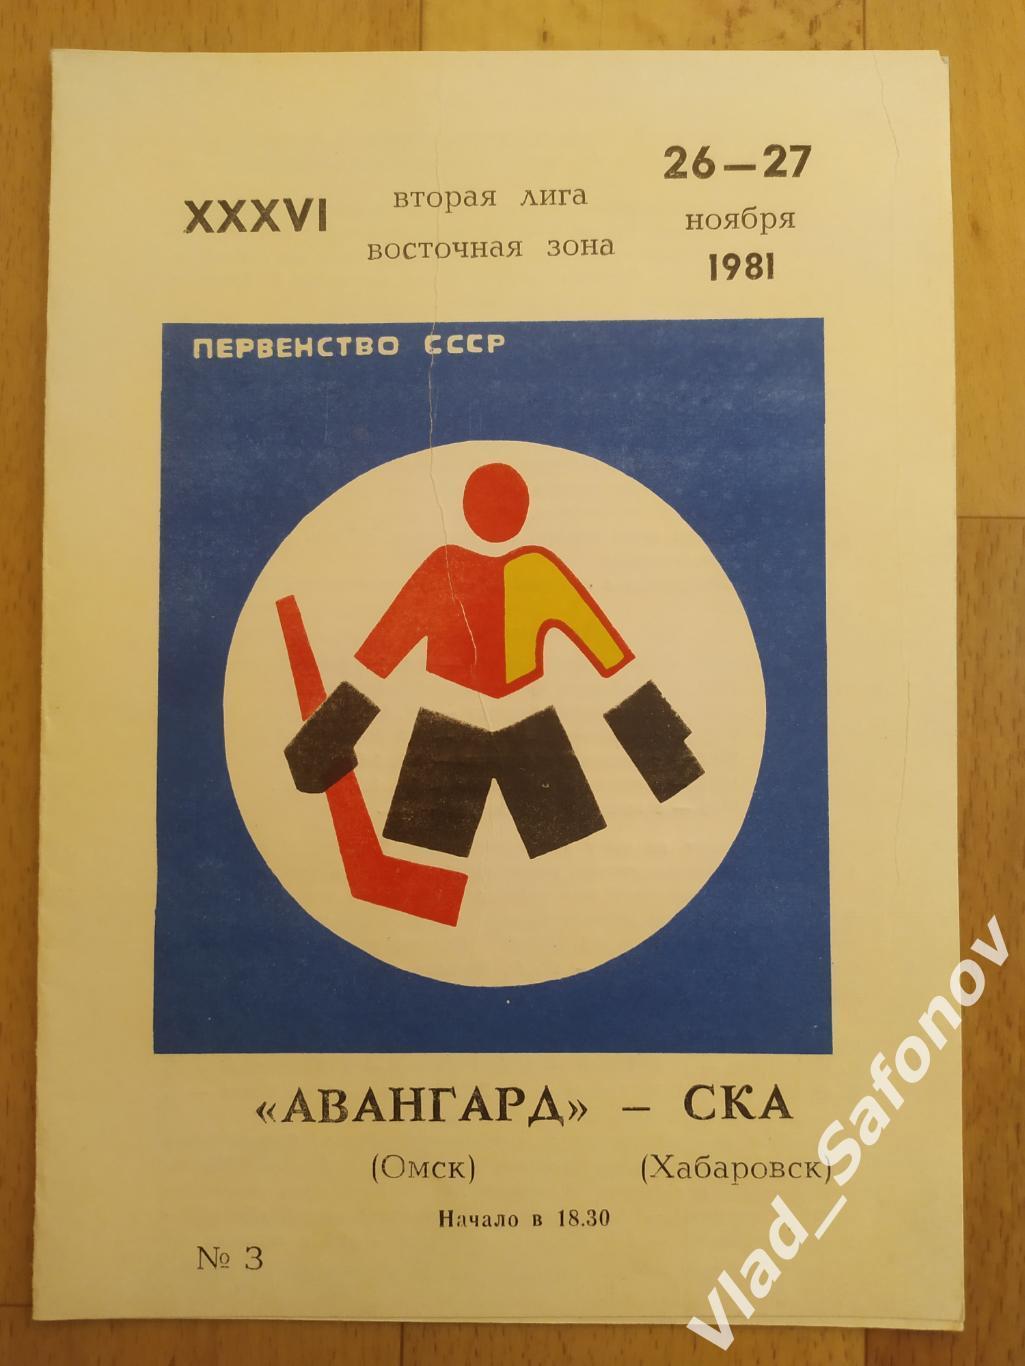 Авангард(Омск) - Ска(Хабаровск). 2 лига. 26-27/11/1981